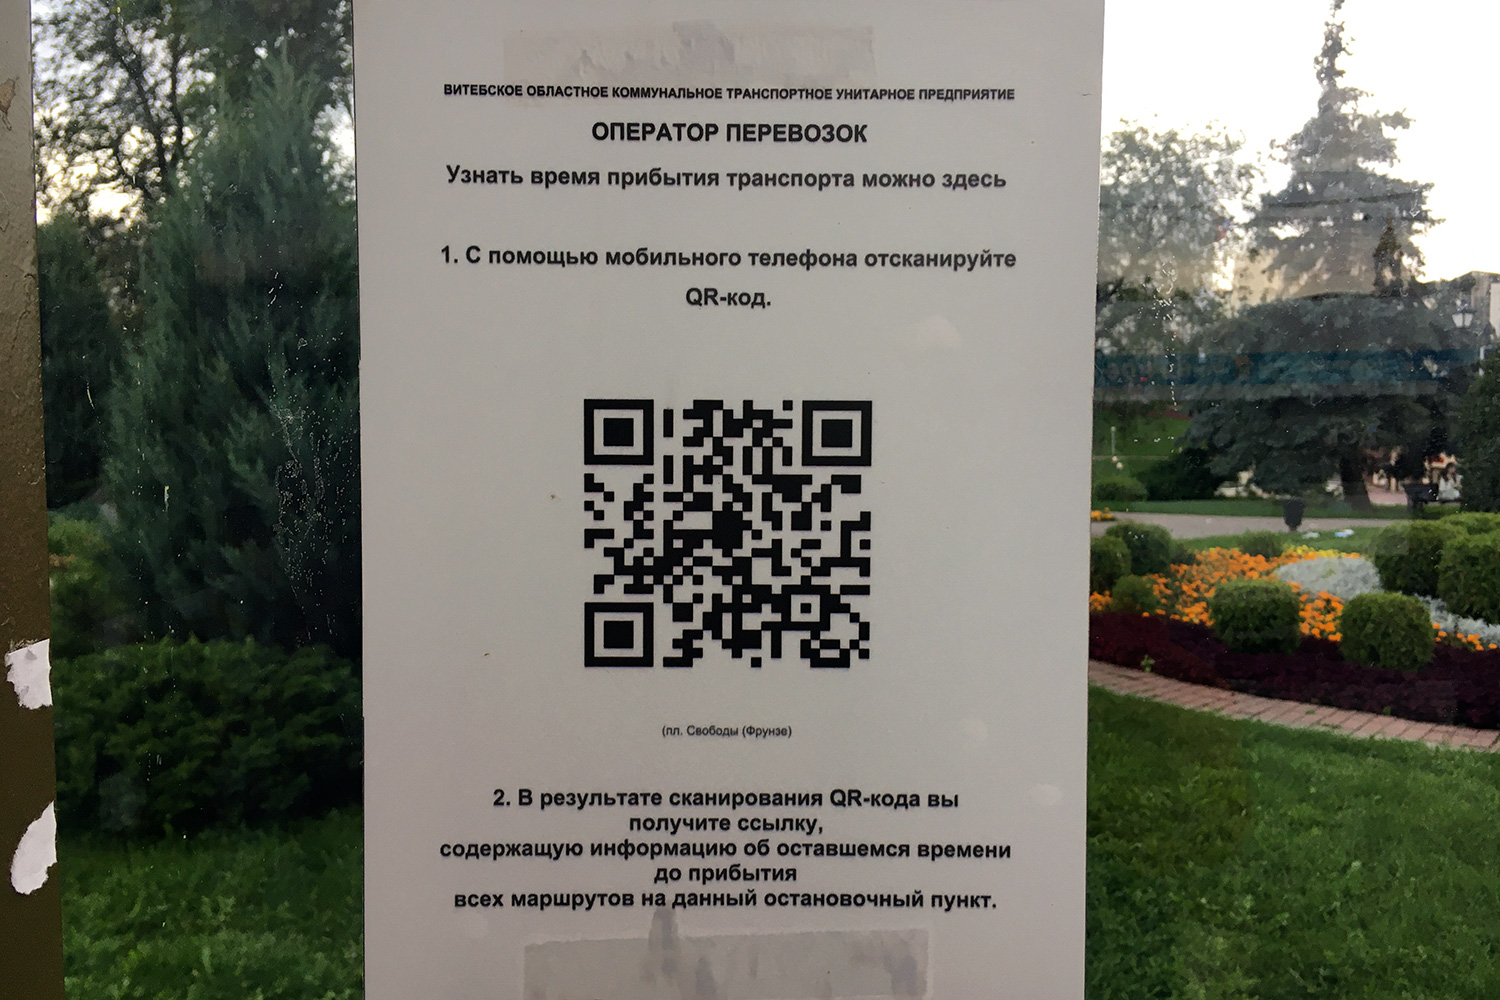 Расписание транспорта по QR-коду можно узнать в Витебске. Фото Сергея Серебро